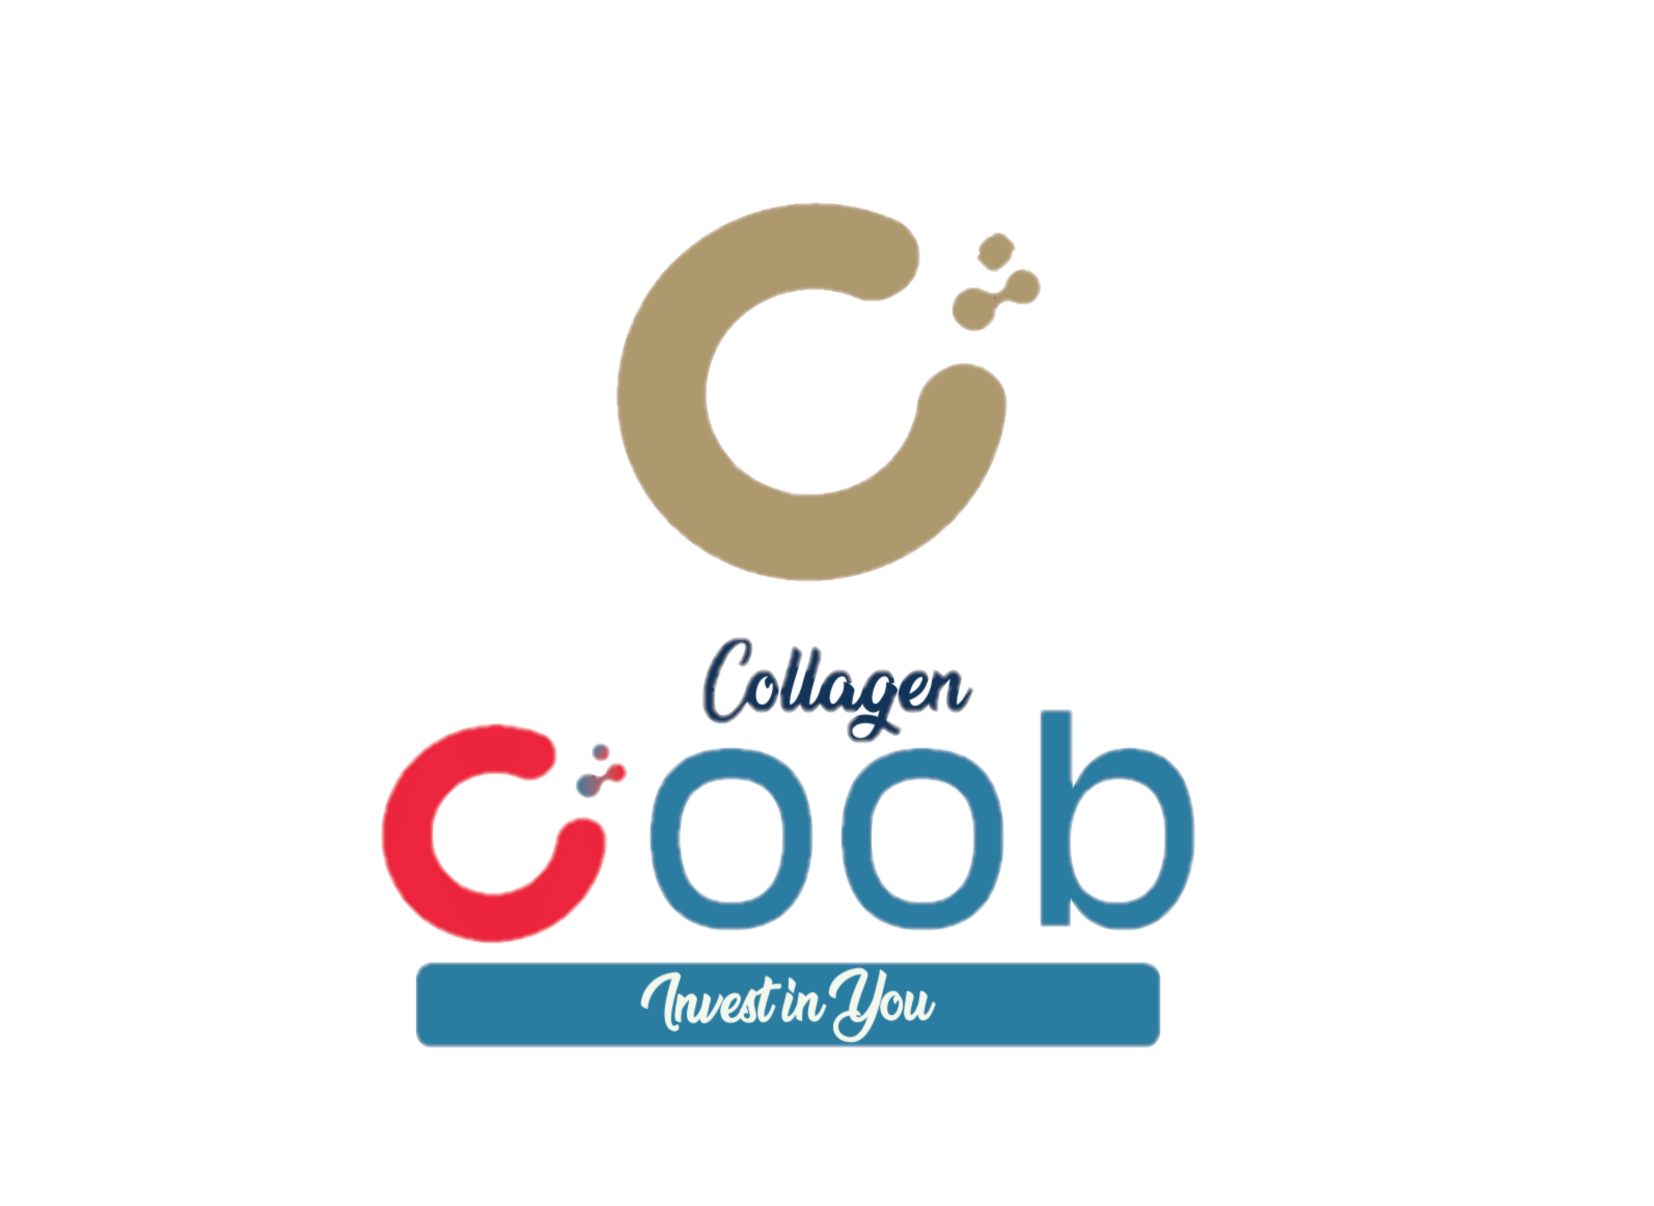 Coob-Collagen